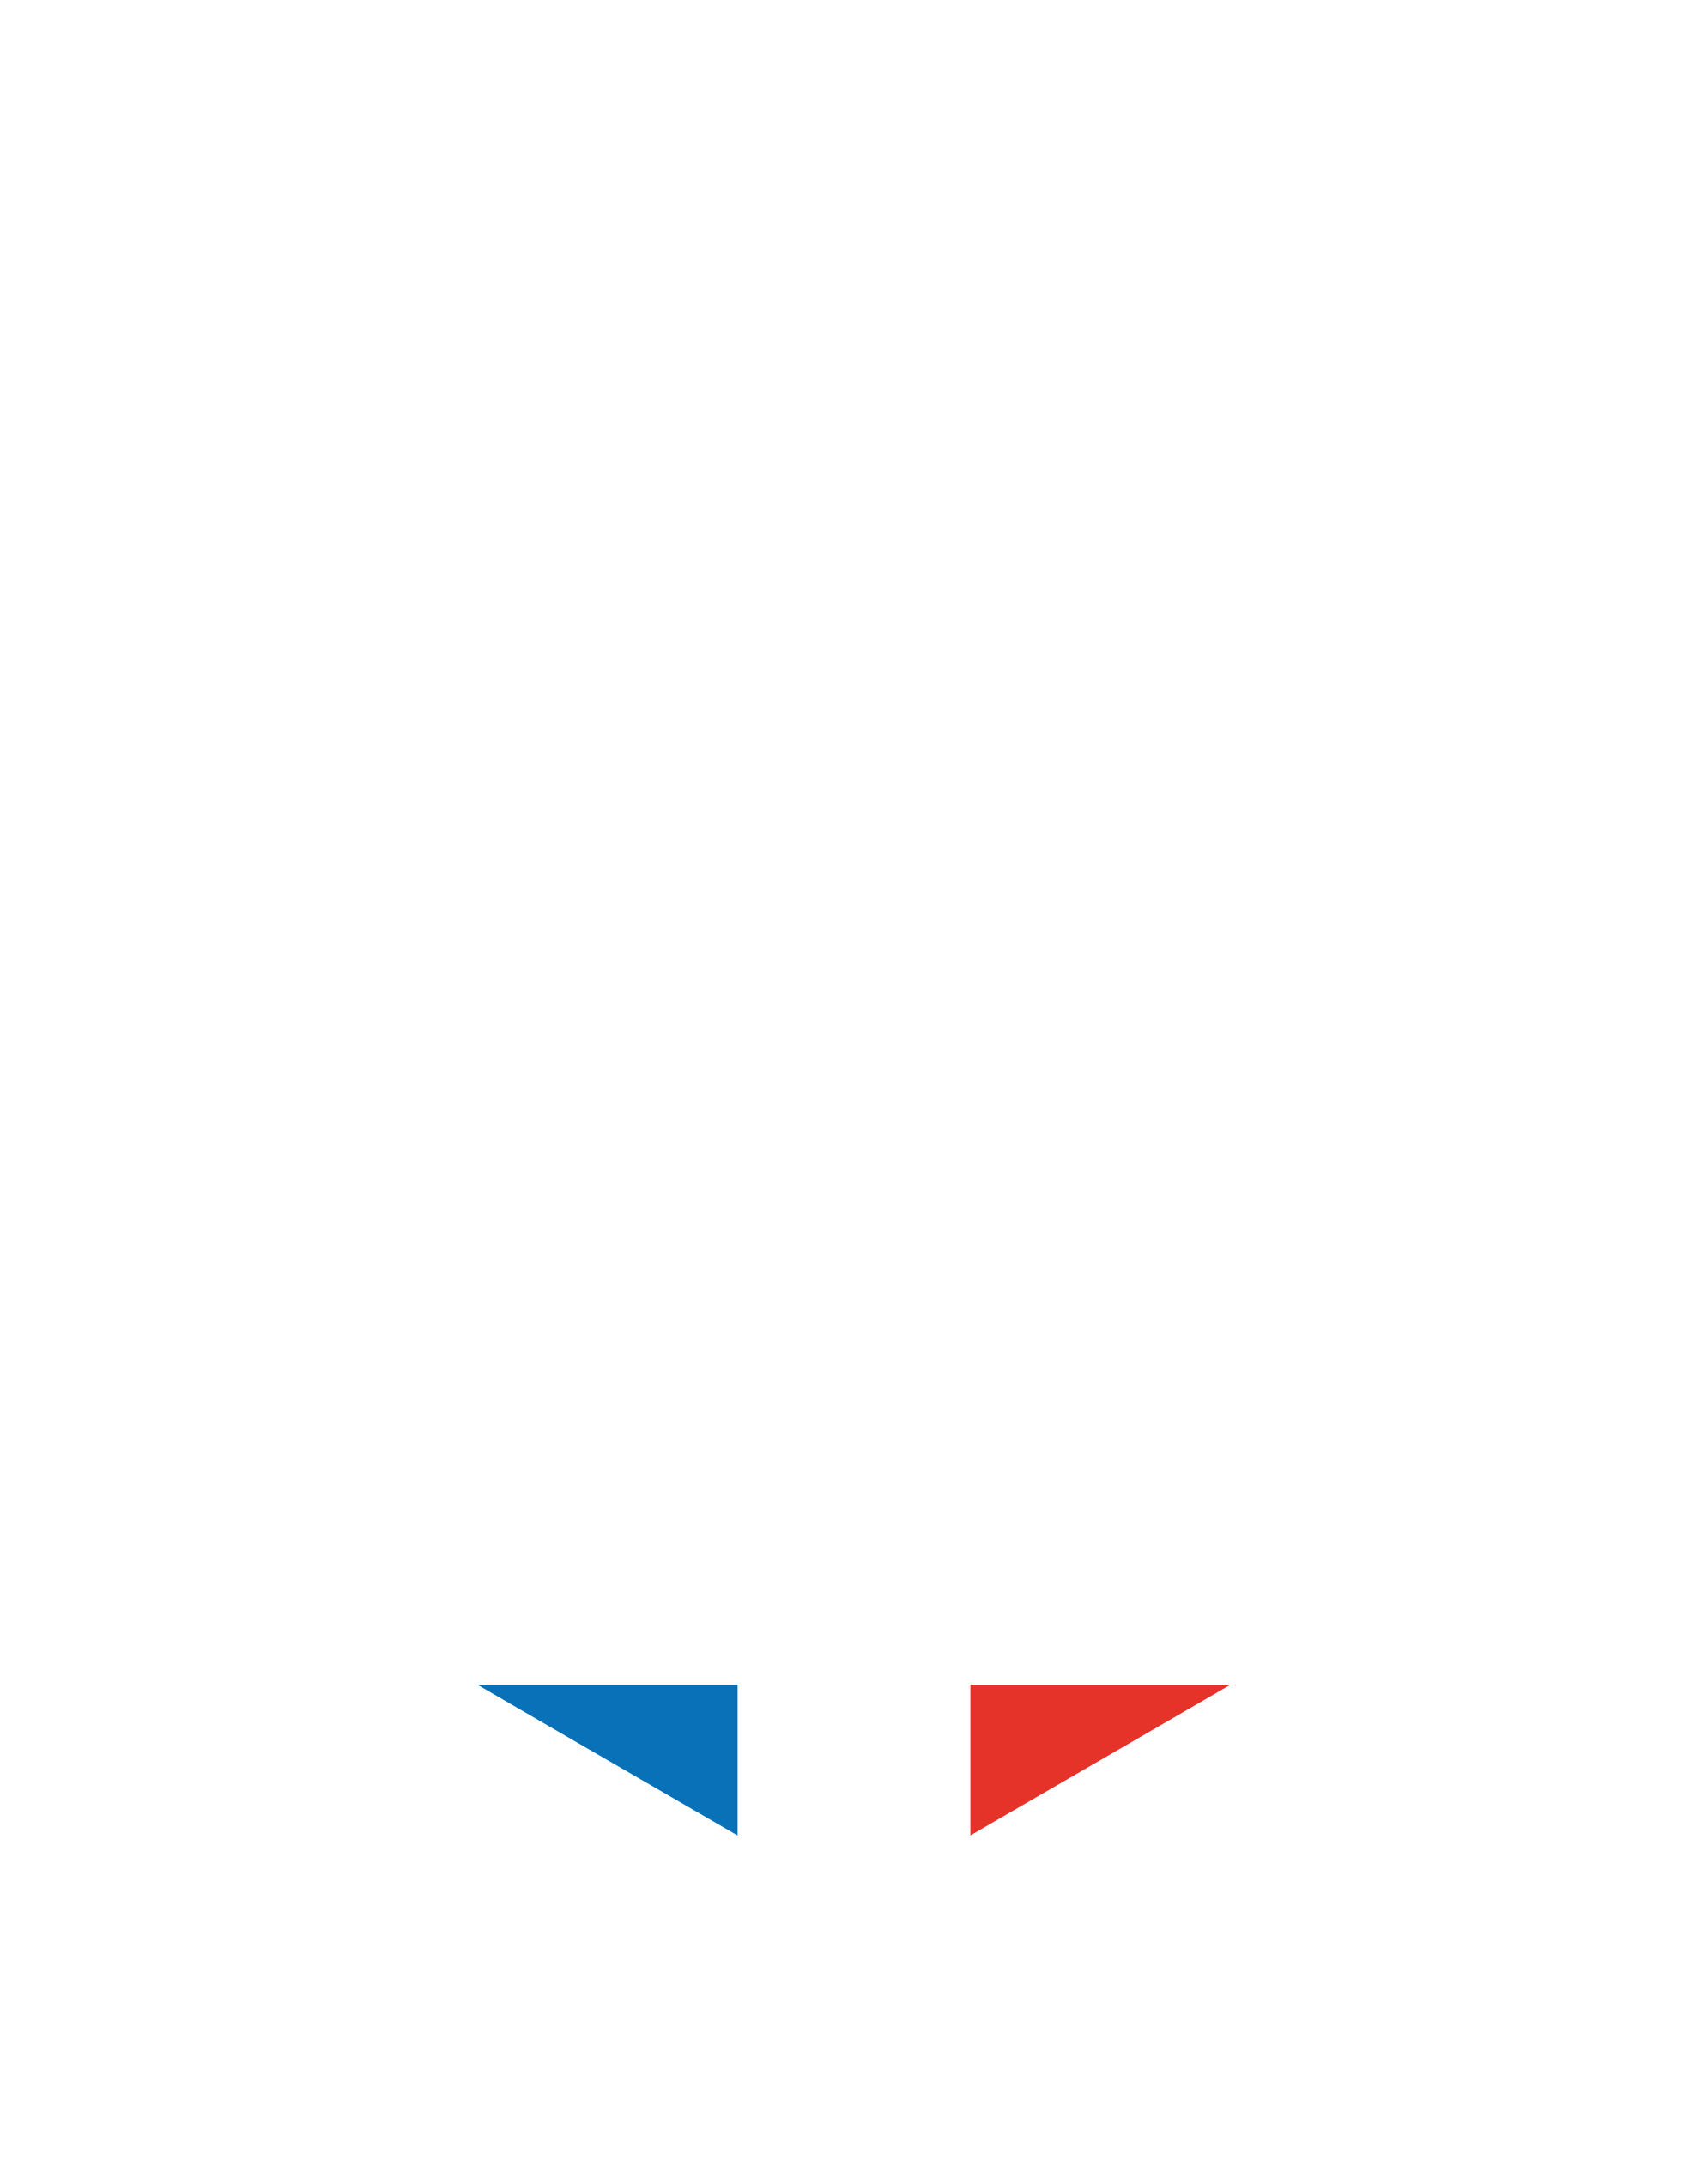 Race Across Paris